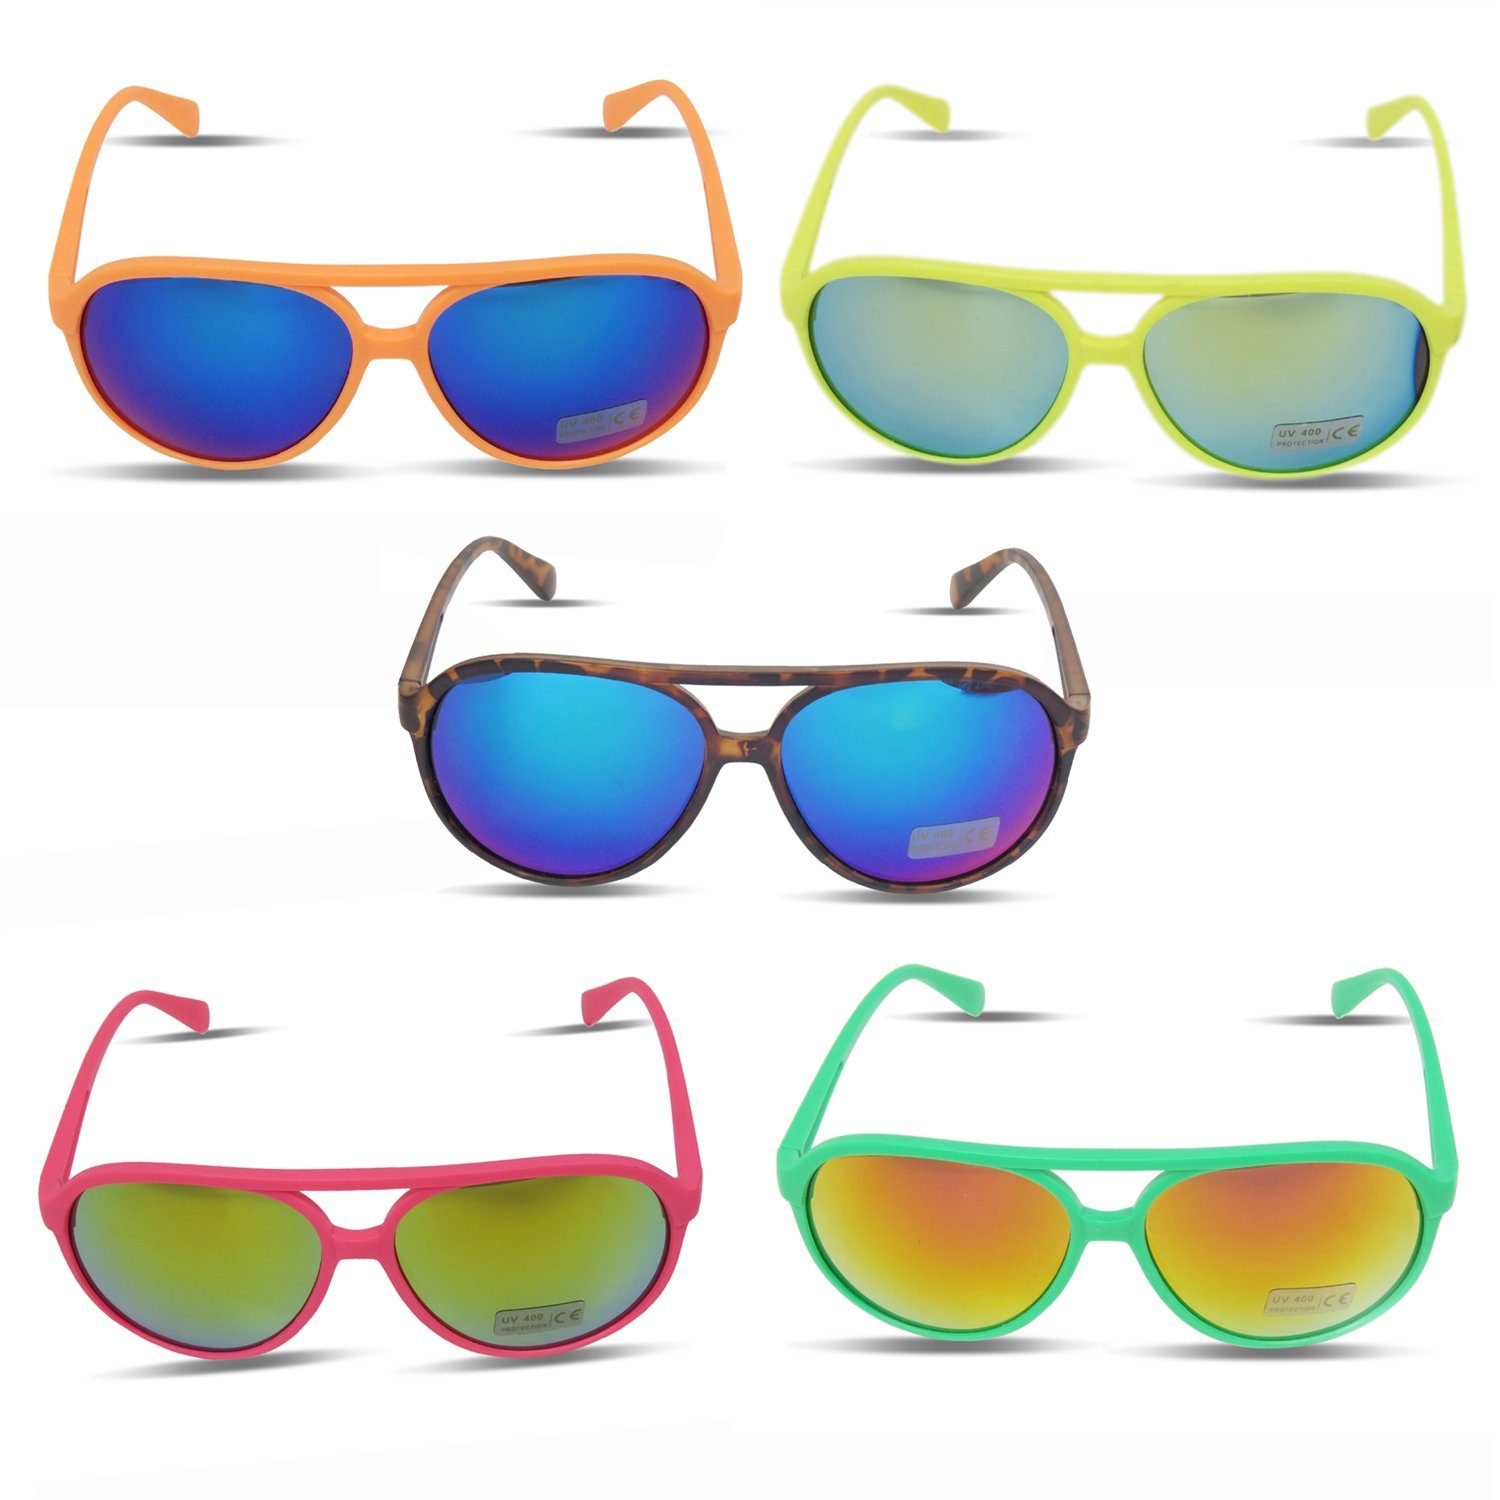 Fun Knallig Verspiegelt pink Gläser: Neon Sonia Verspiegelt Brille Onesize, Originelli Sonnenbrille Sonnenbrille